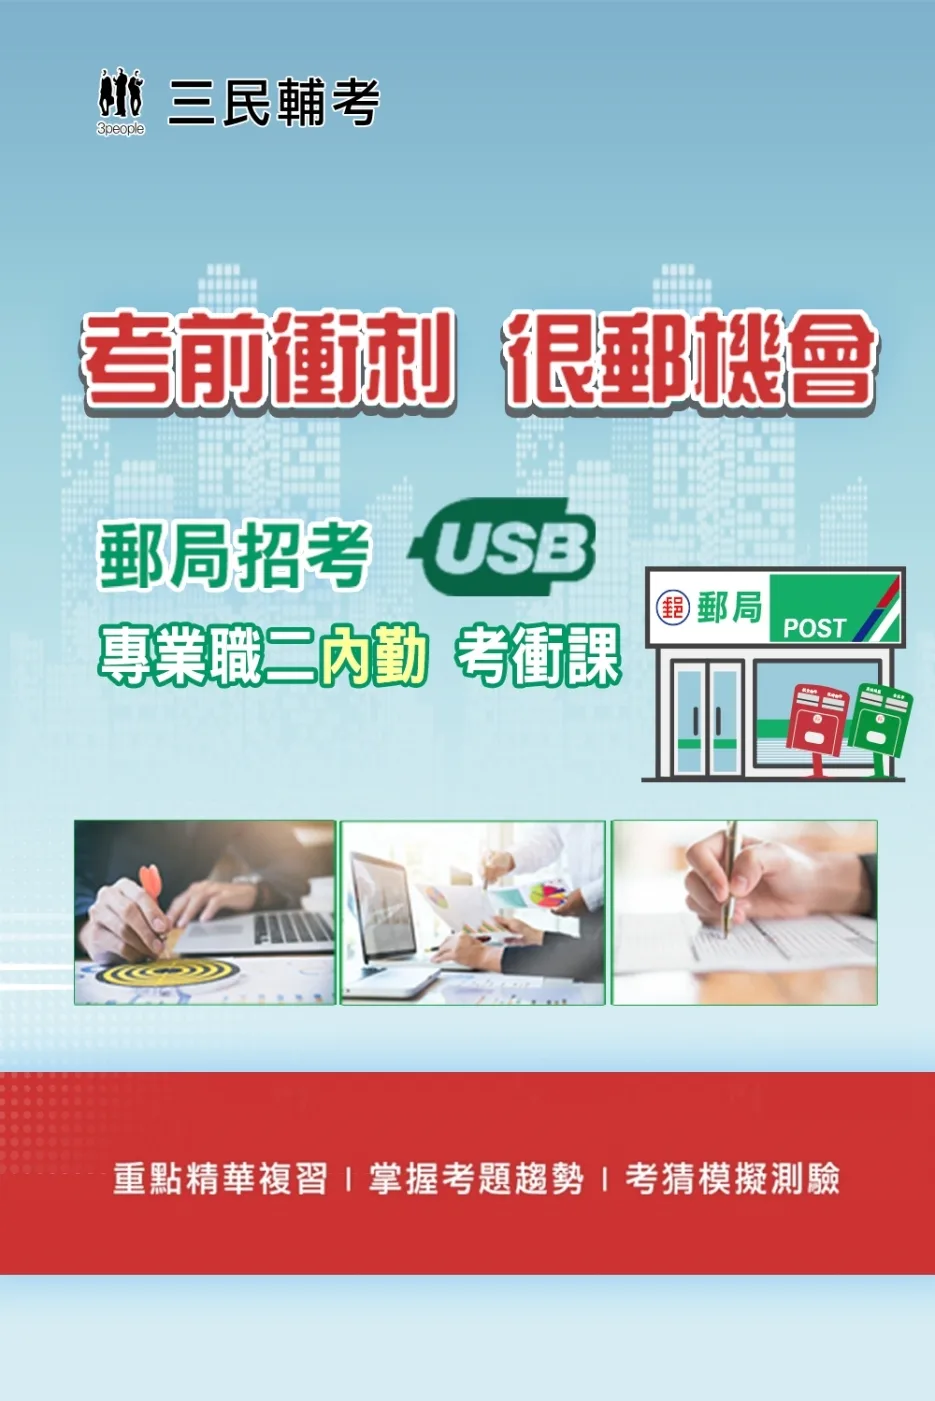 中華郵政(郵局)[專業職(二)內勤人員]名師重點彙整課程[USB隨身碟版]